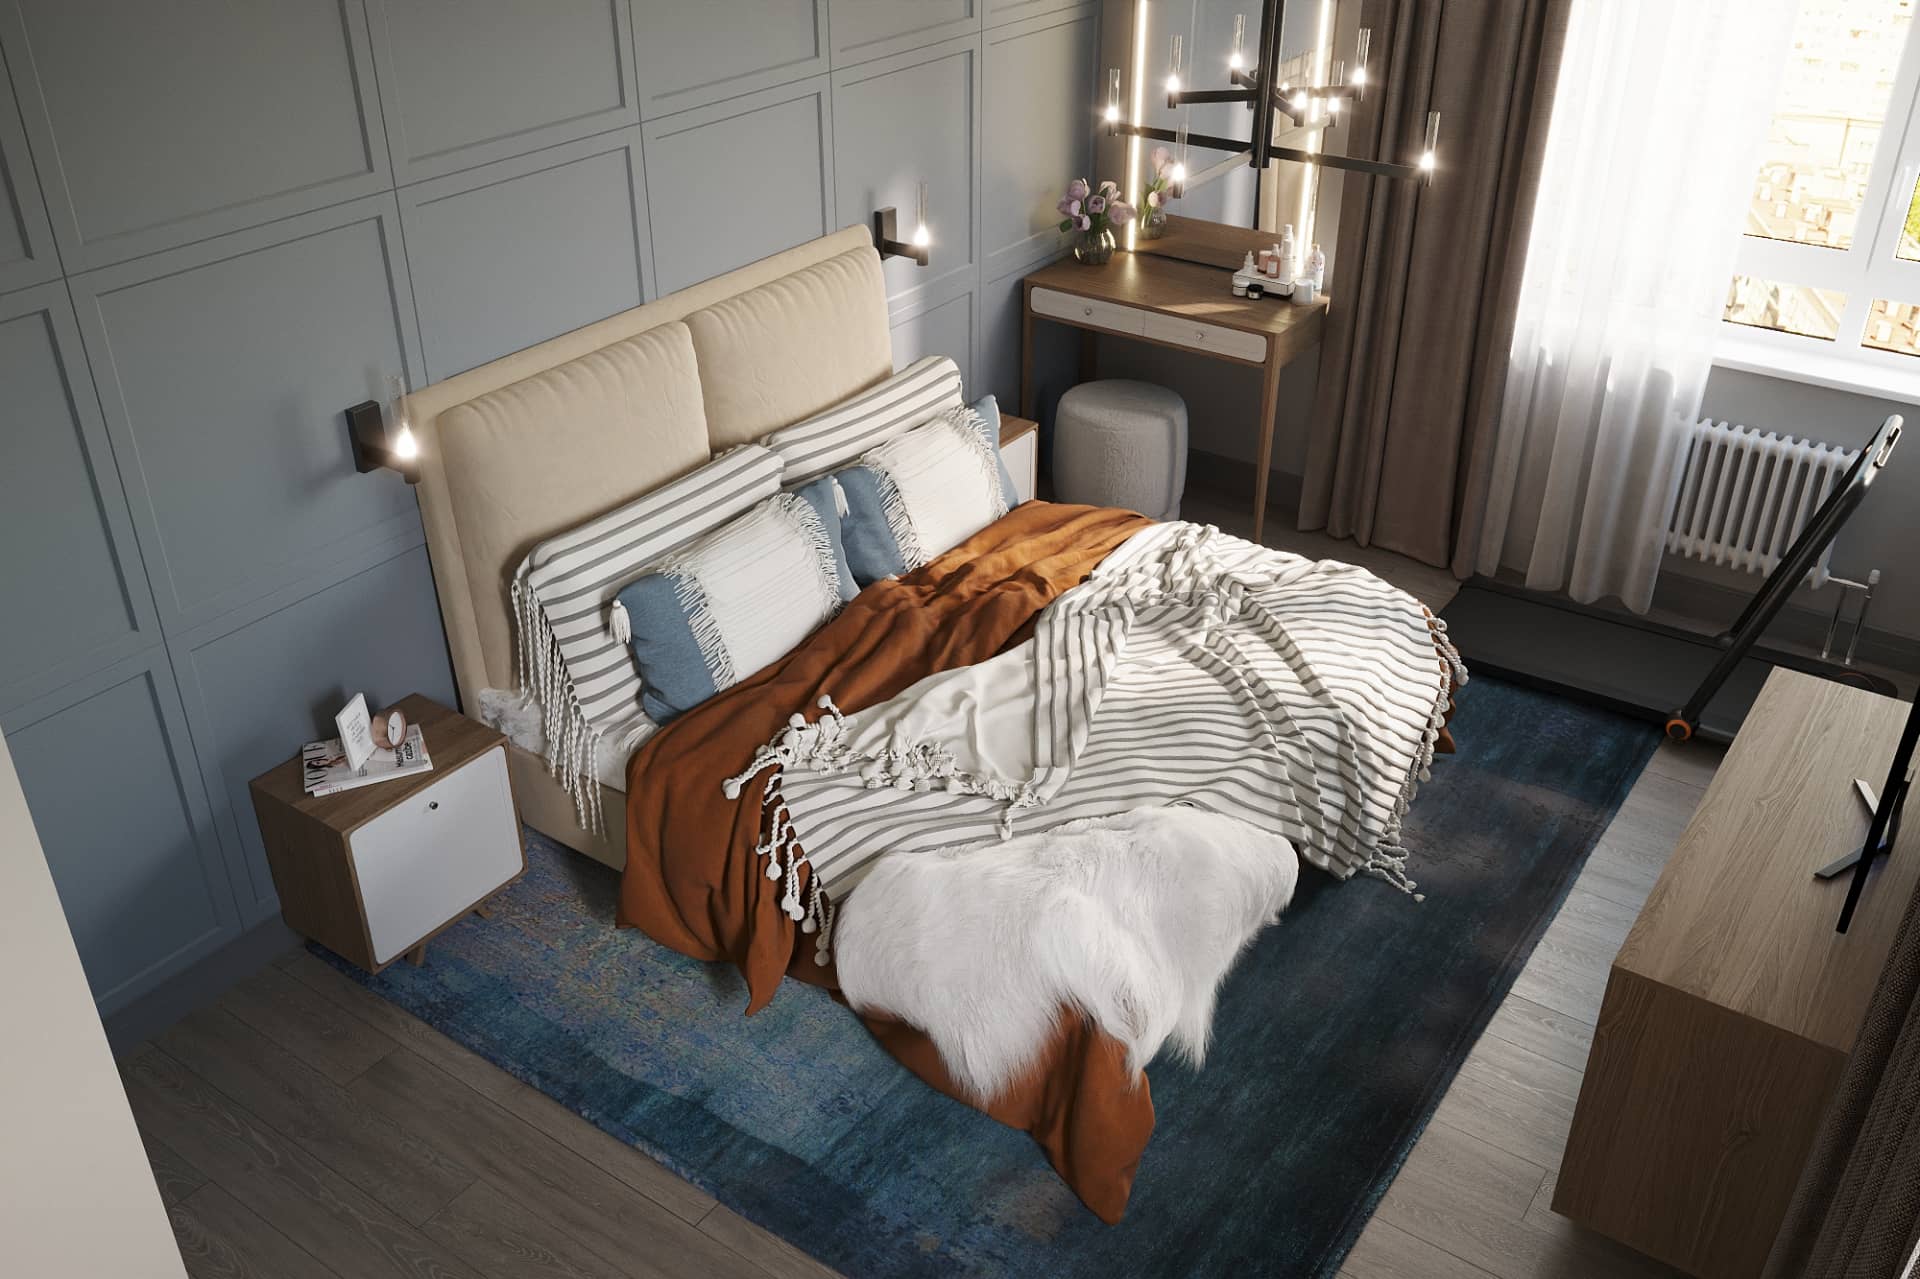 Оформление интерьера спальни в скандинавском стиле. Фото № 62182.